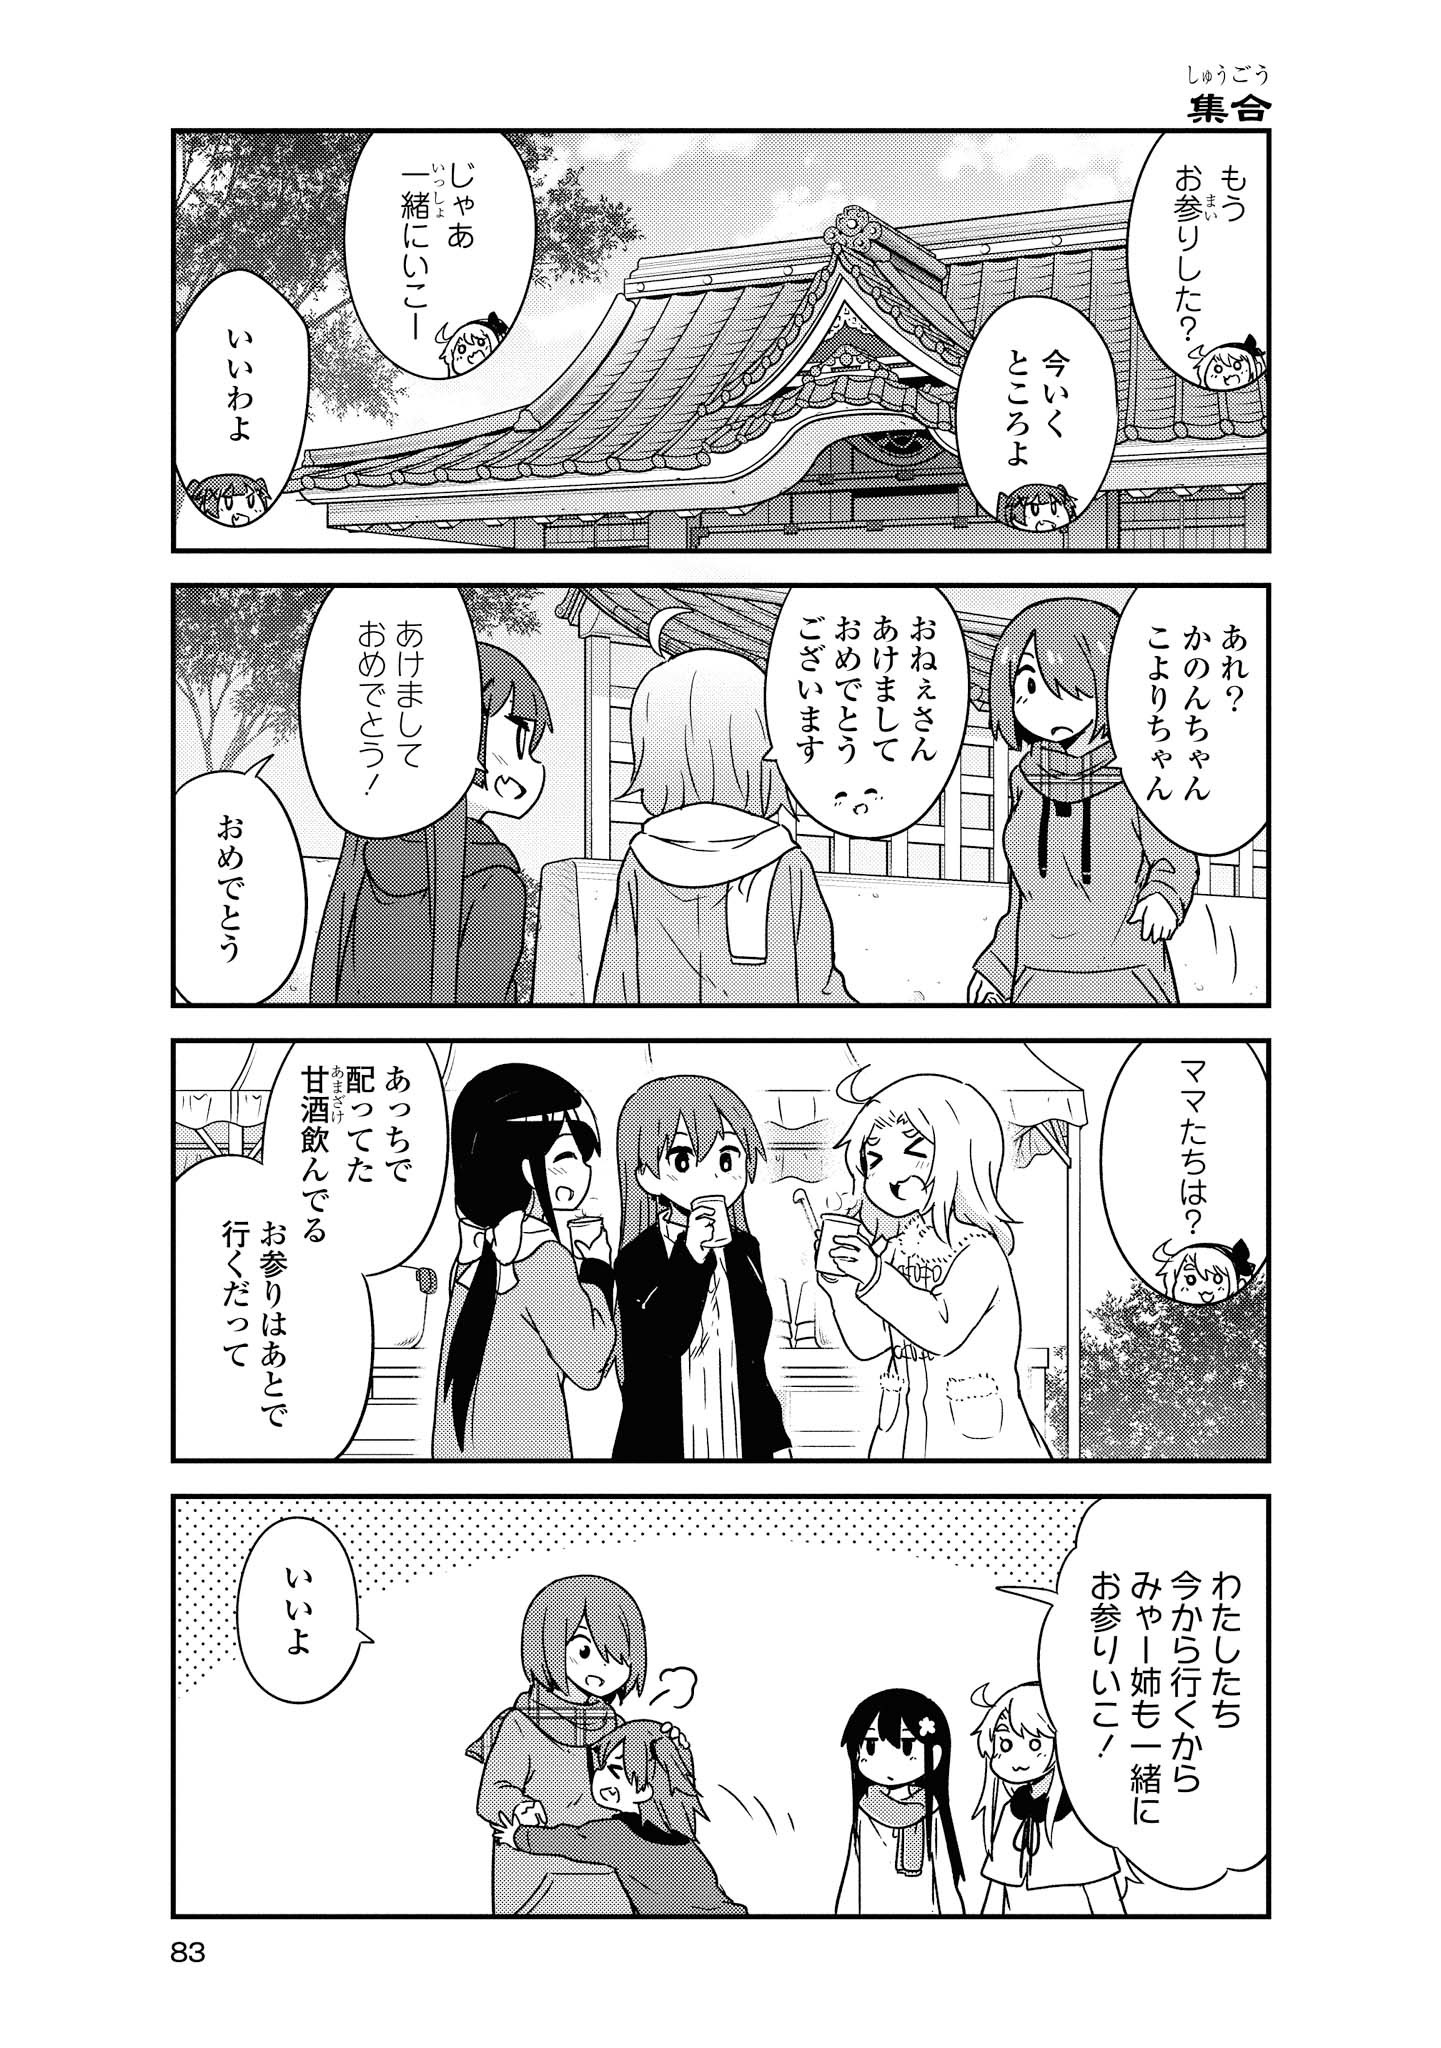 Watashi ni Tenshi ga Maiorita! - Chapter 48 - Page 13